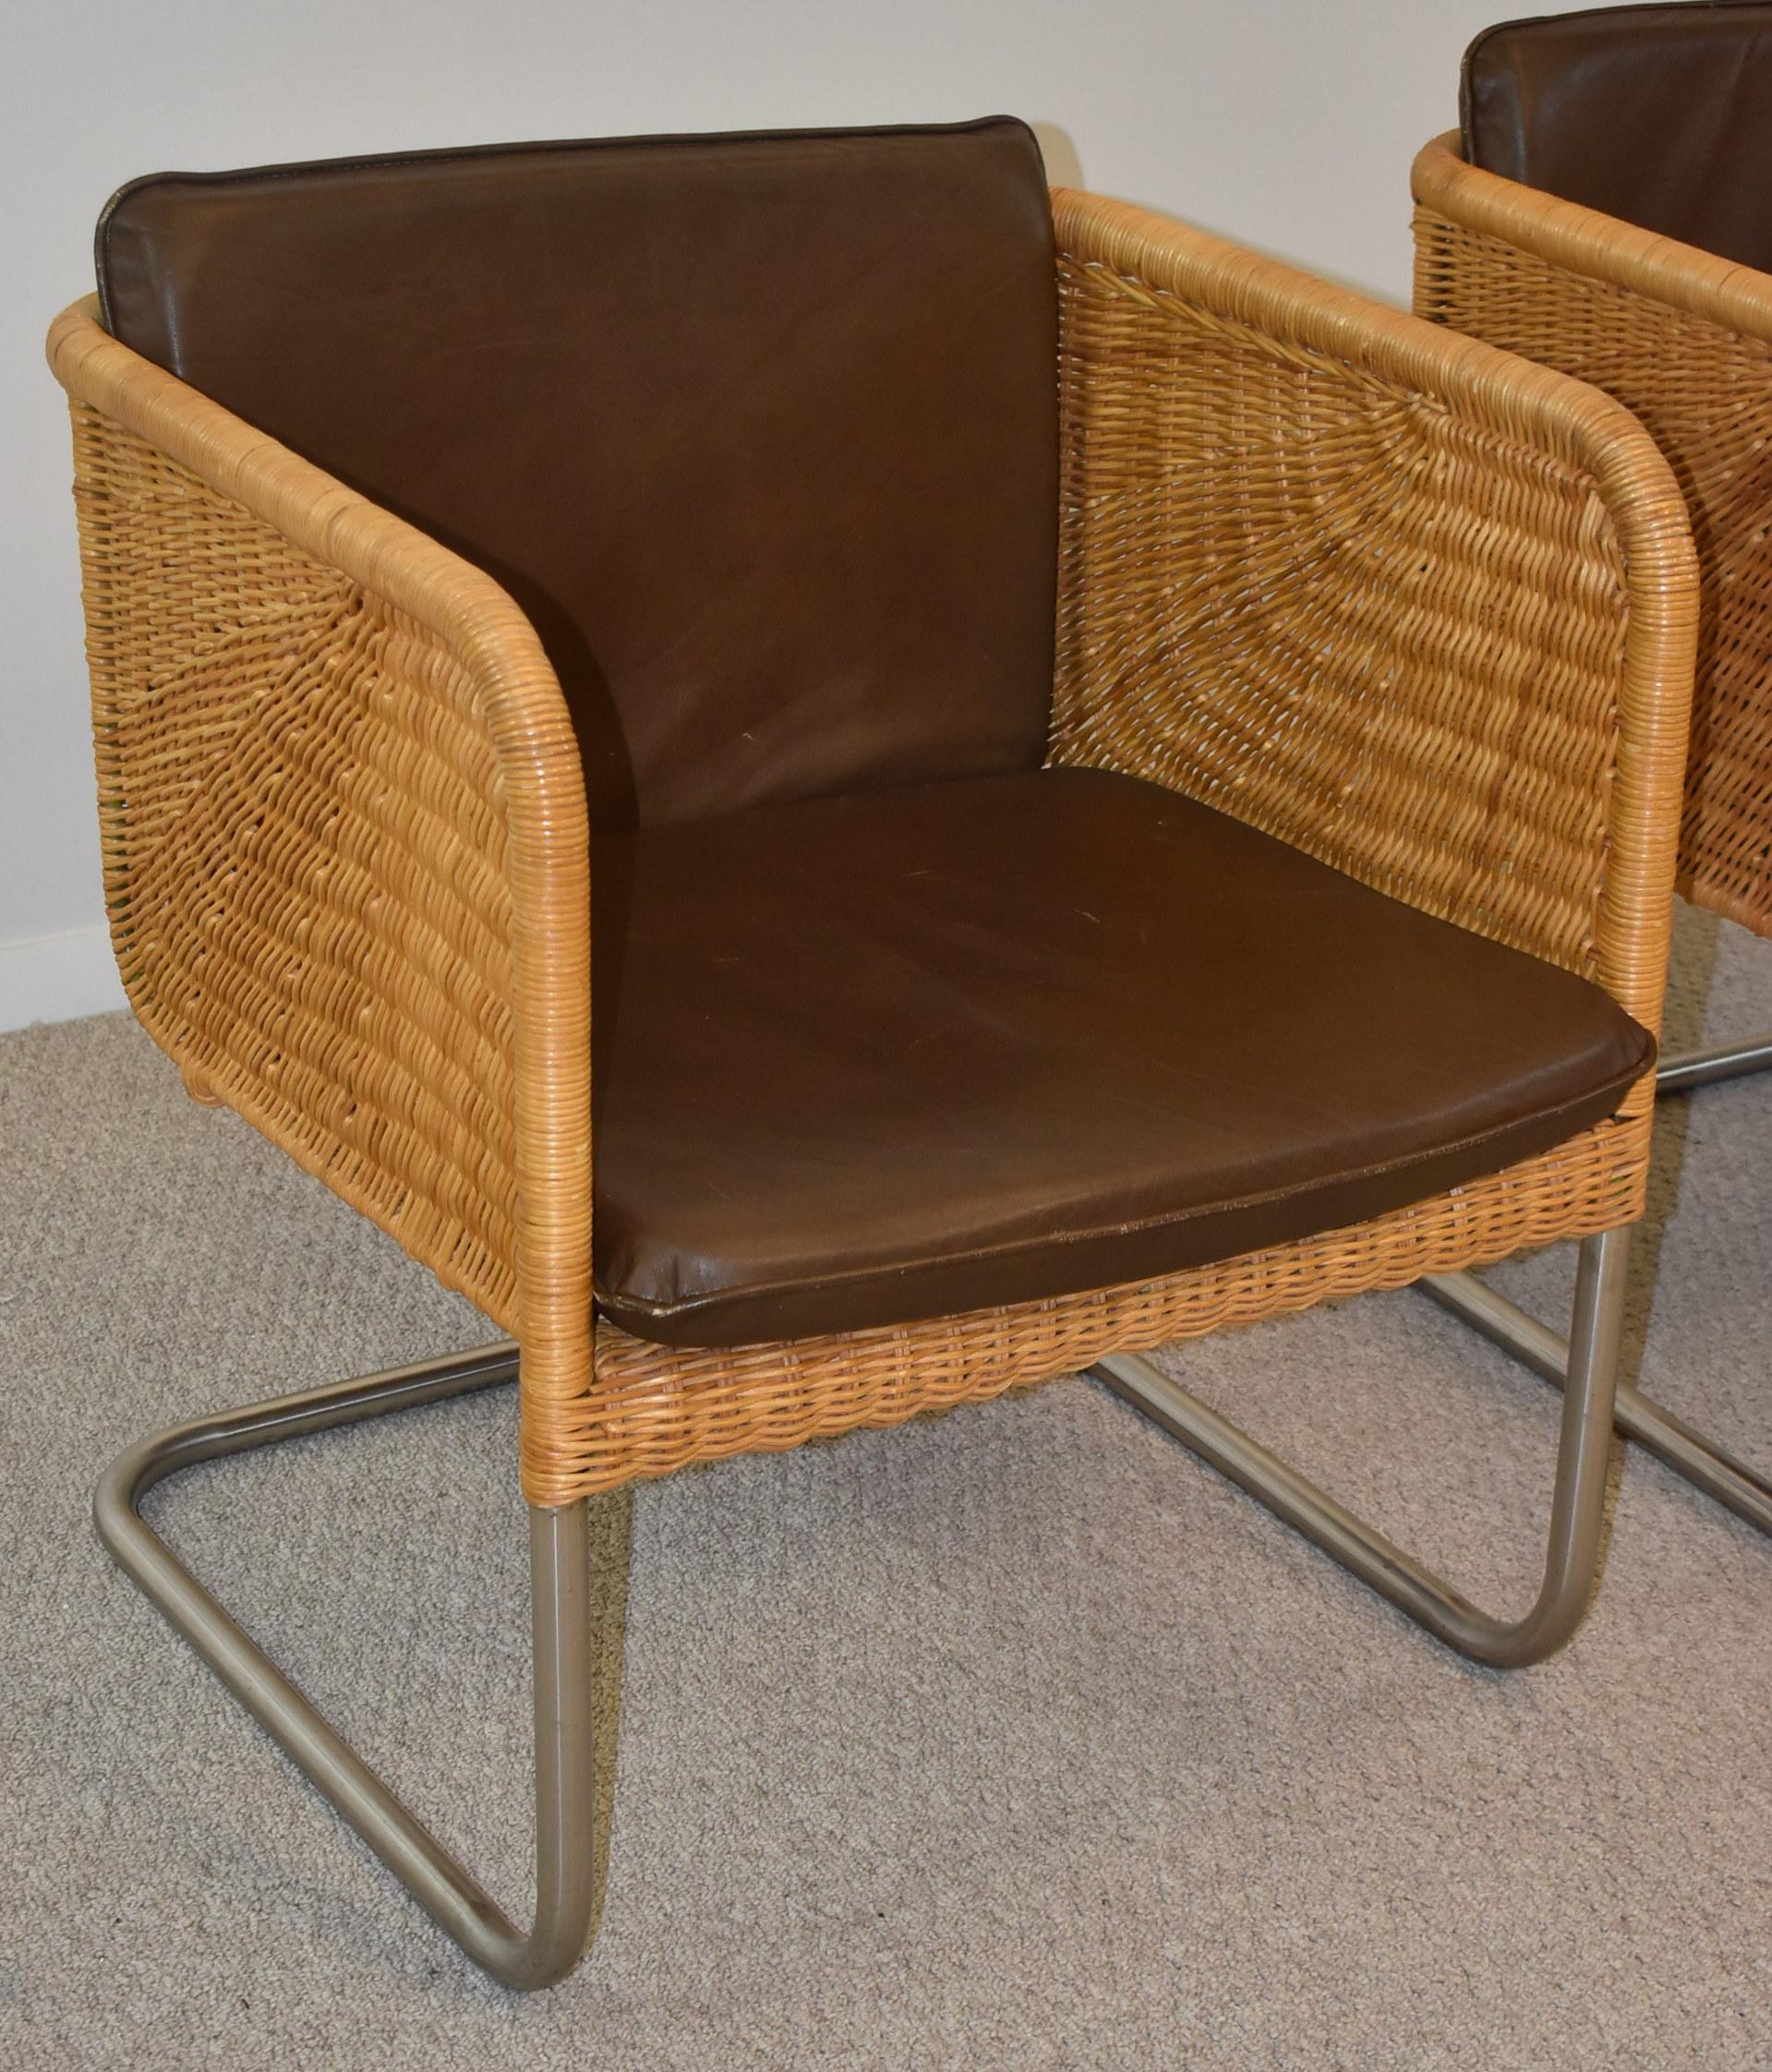 Vintage Paar Harvey Probber Geflecht, röhrenförmigen Chrom und Leder Beistellstühle D43 Modell. Abnehmbare braune Lederkissen, und Chrom ist in fantastischem Zustand unpitted, untarnished. Freitragendes Design. Diese Stühle sind in ausgezeichnetem